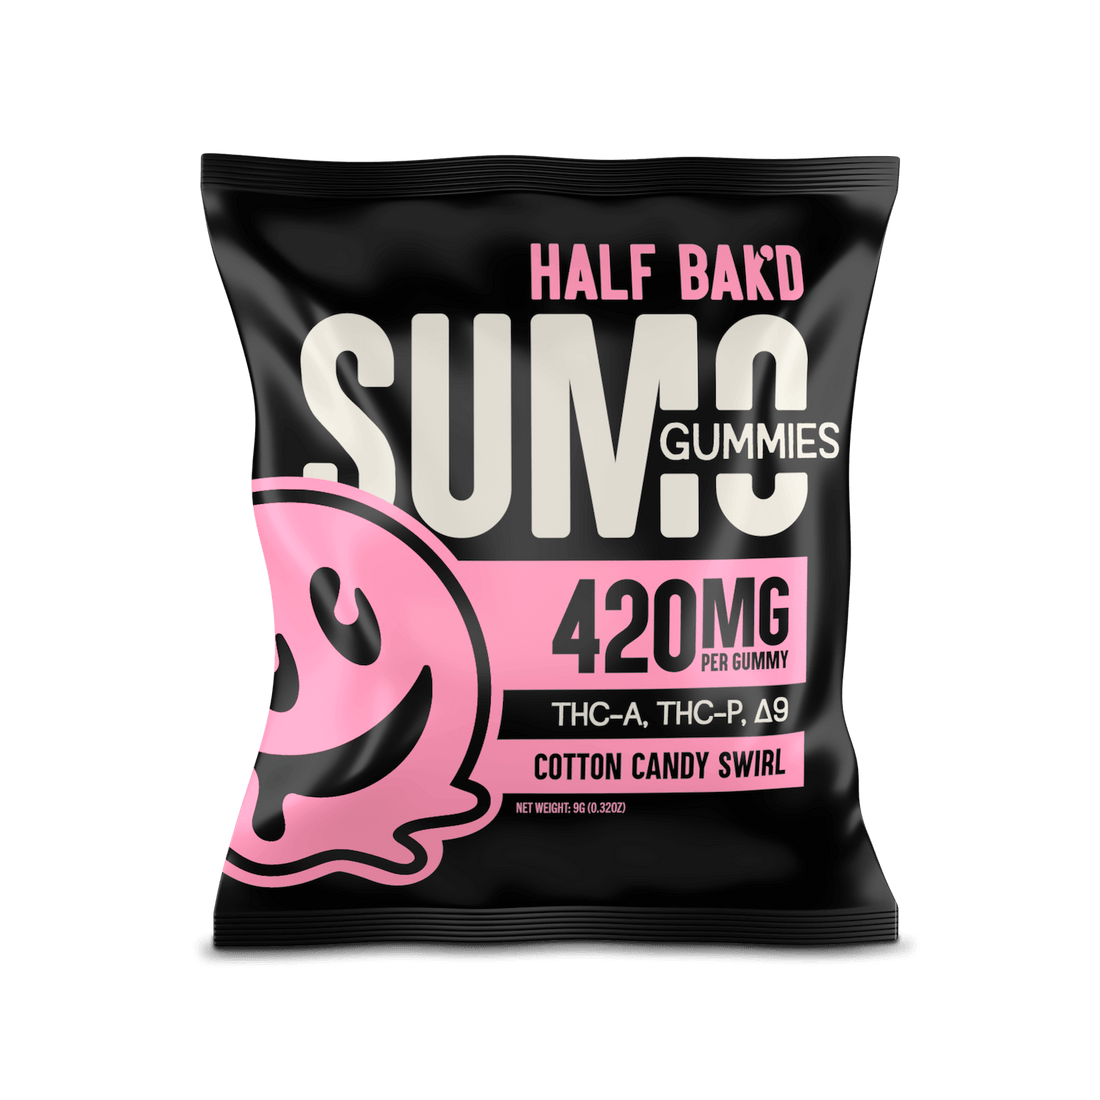 Cotton Candy Swirl - Sumo Gummies - HALF BAK&